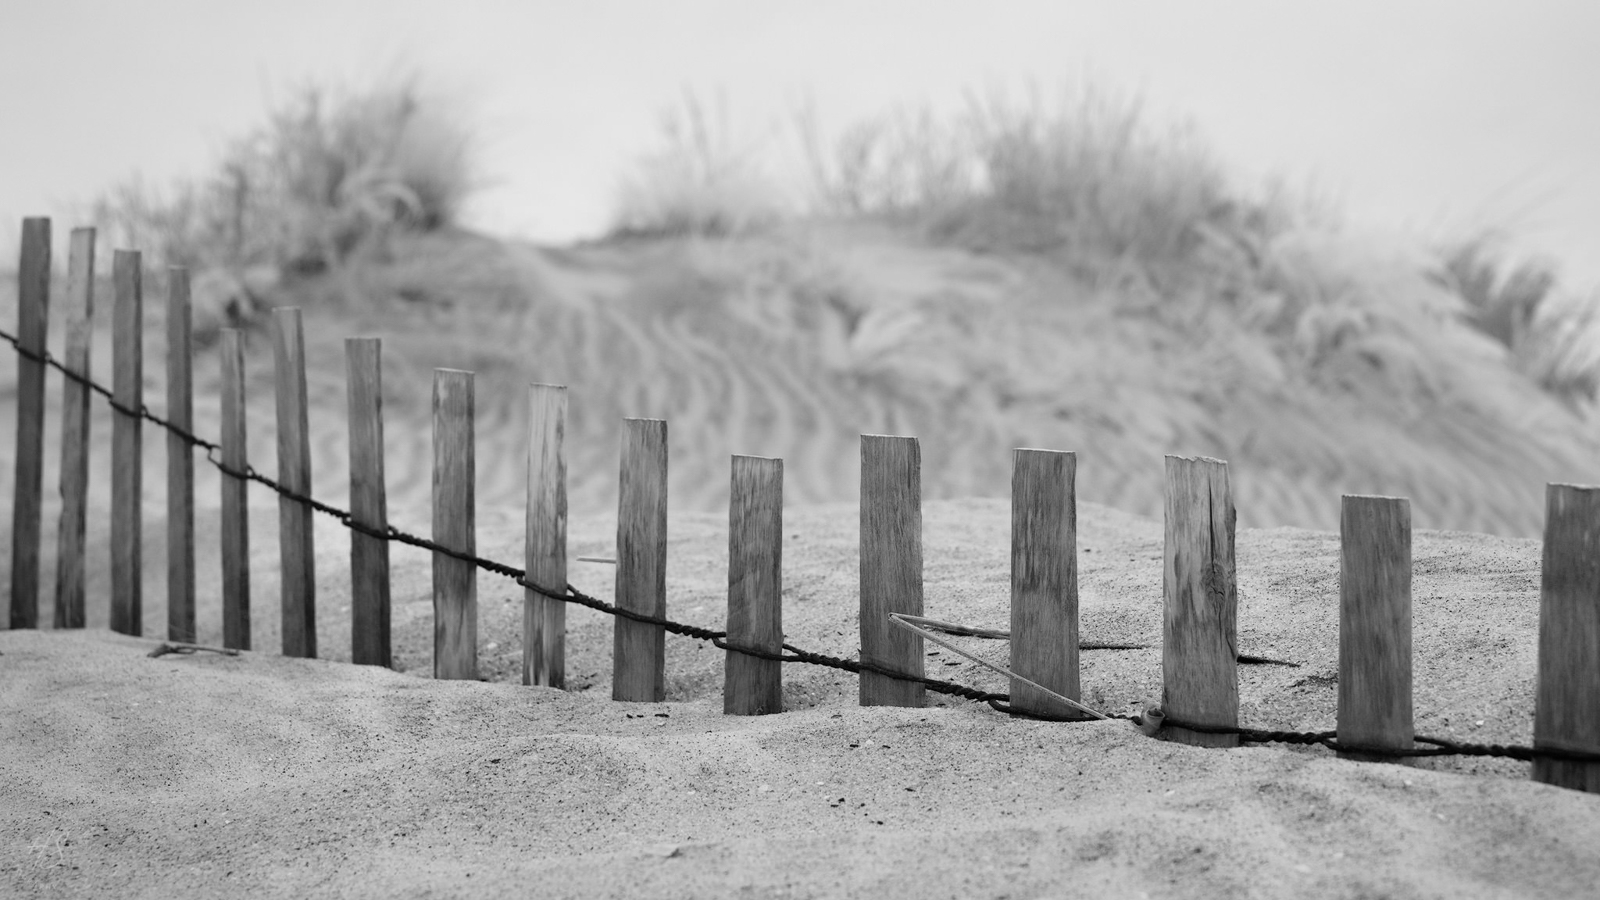 2021_05_Assateague-10015-Edit2048.jpg - Buried sand fence on the beach.